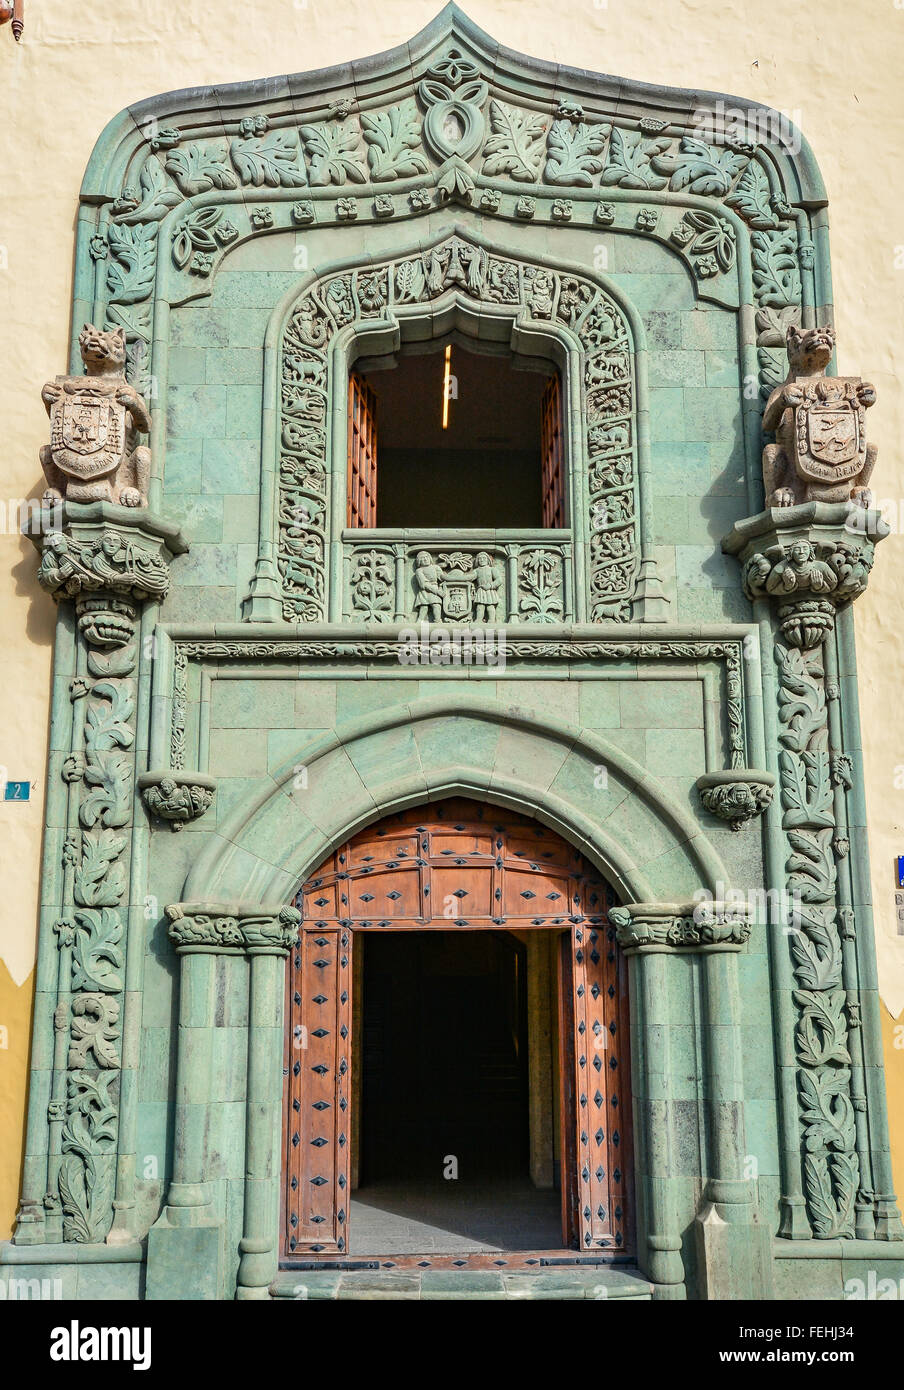 Main entrance to Casa de Colon (The house of Christopher Columbus), Las Palmas, Gran Canaria, Spain Stock Photo